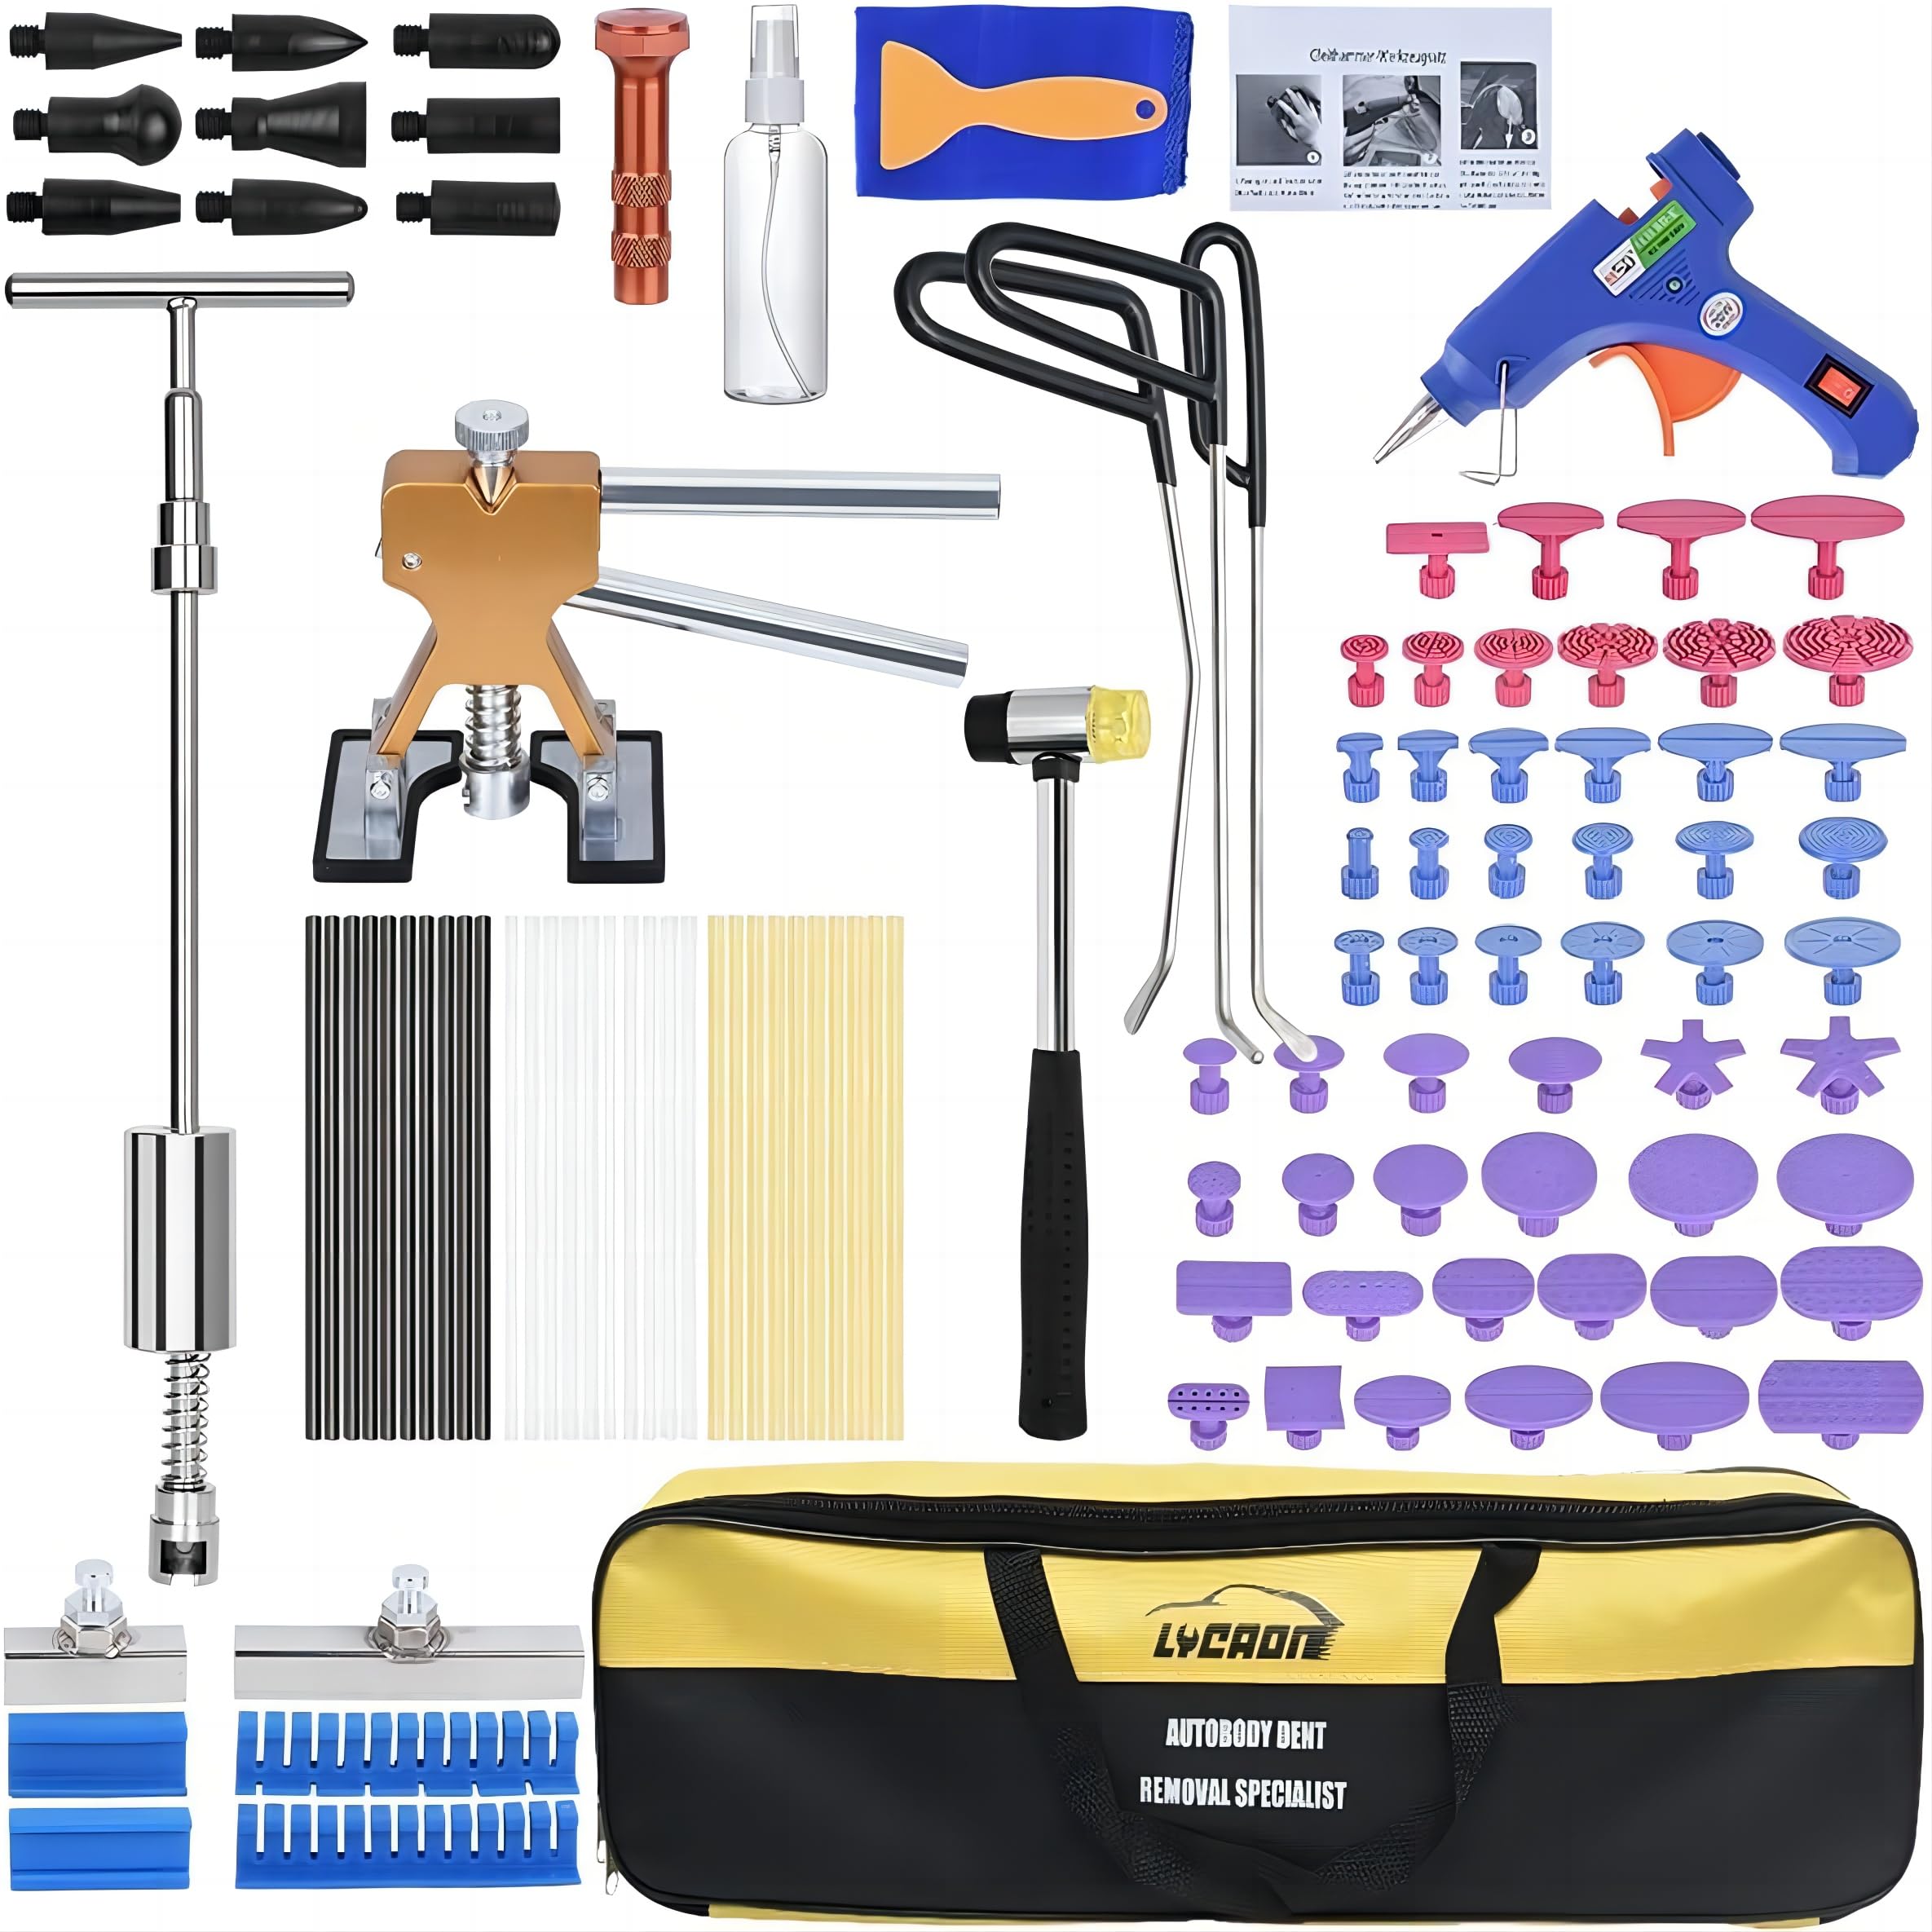 lycaon Dent Remover Repair Puller Tool Kit, Slide Hammer T Bar Dent Puller, golden Lifter, Bridge Puller & glue gun for Automobile Body